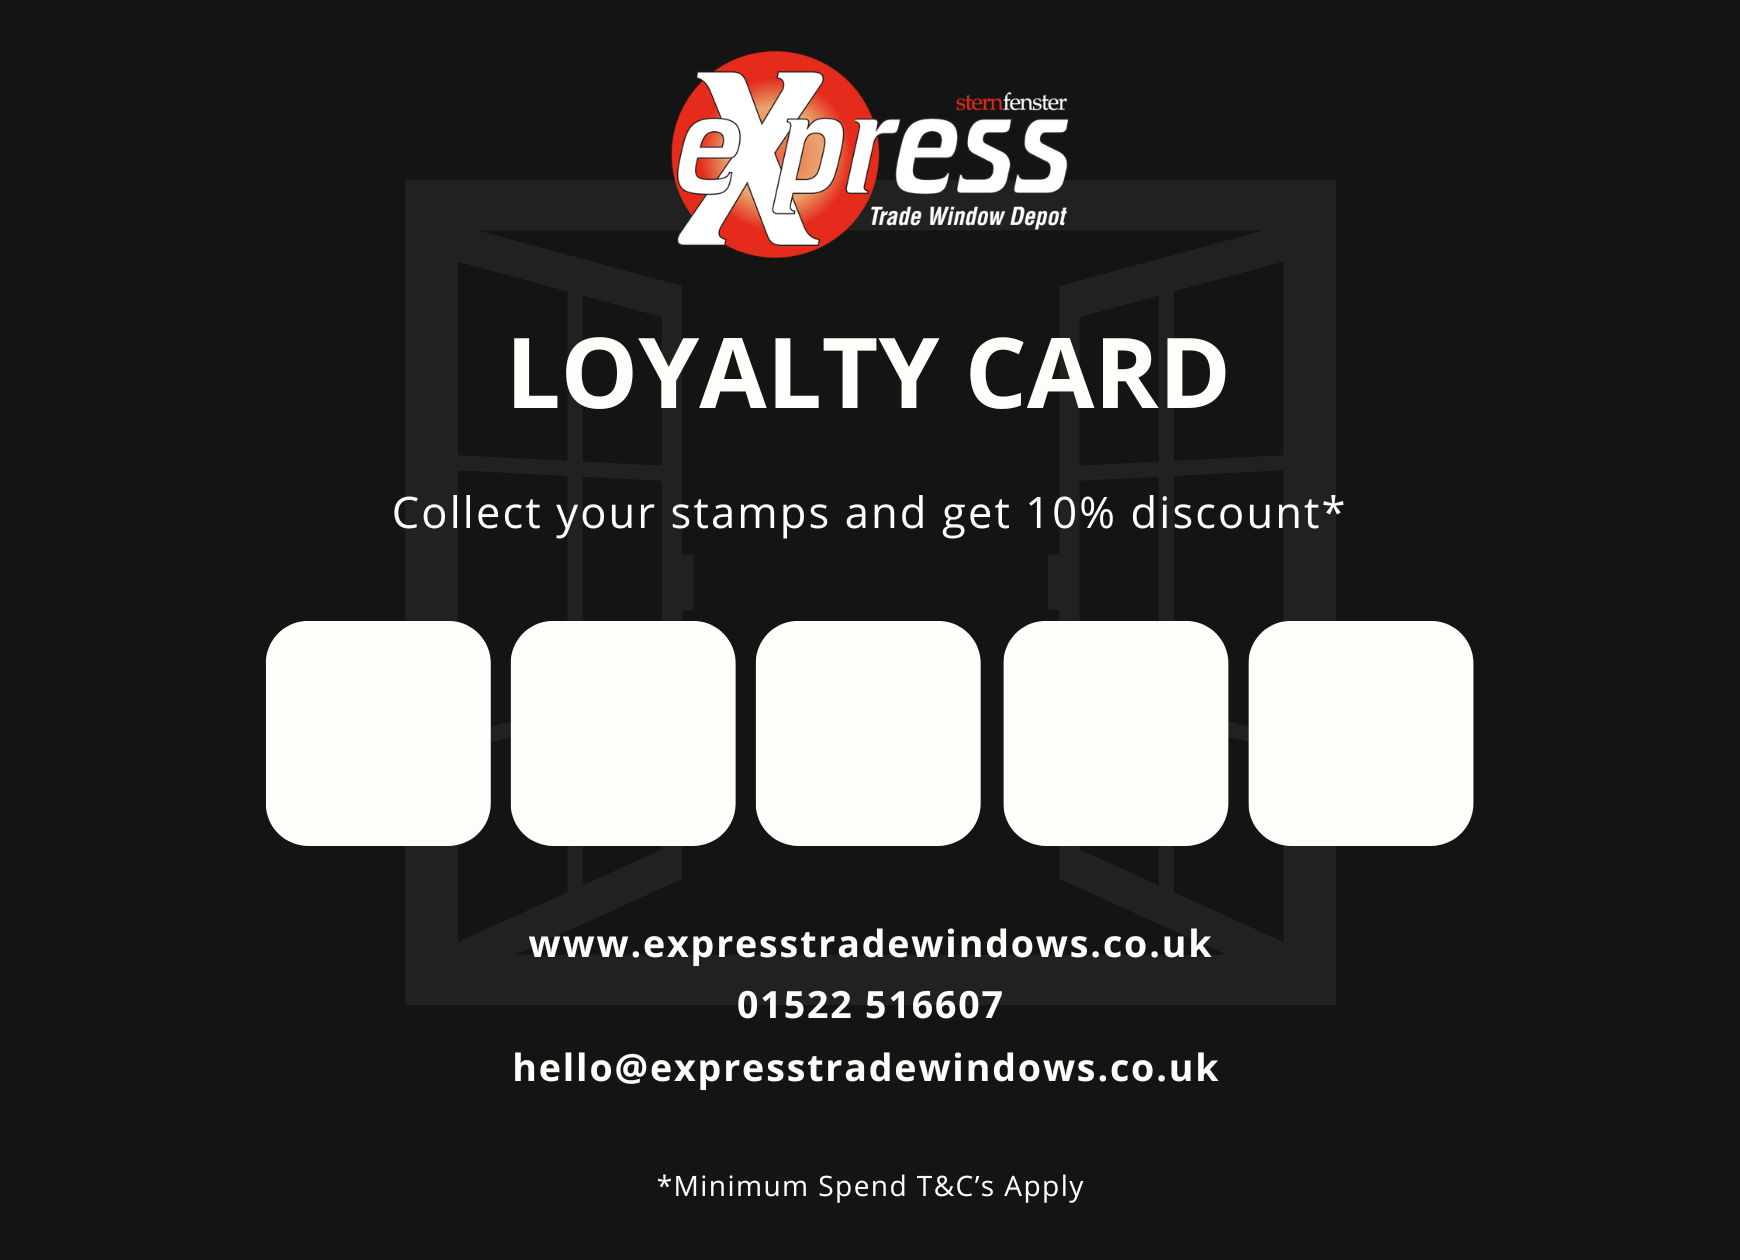 Express Loyalty Card